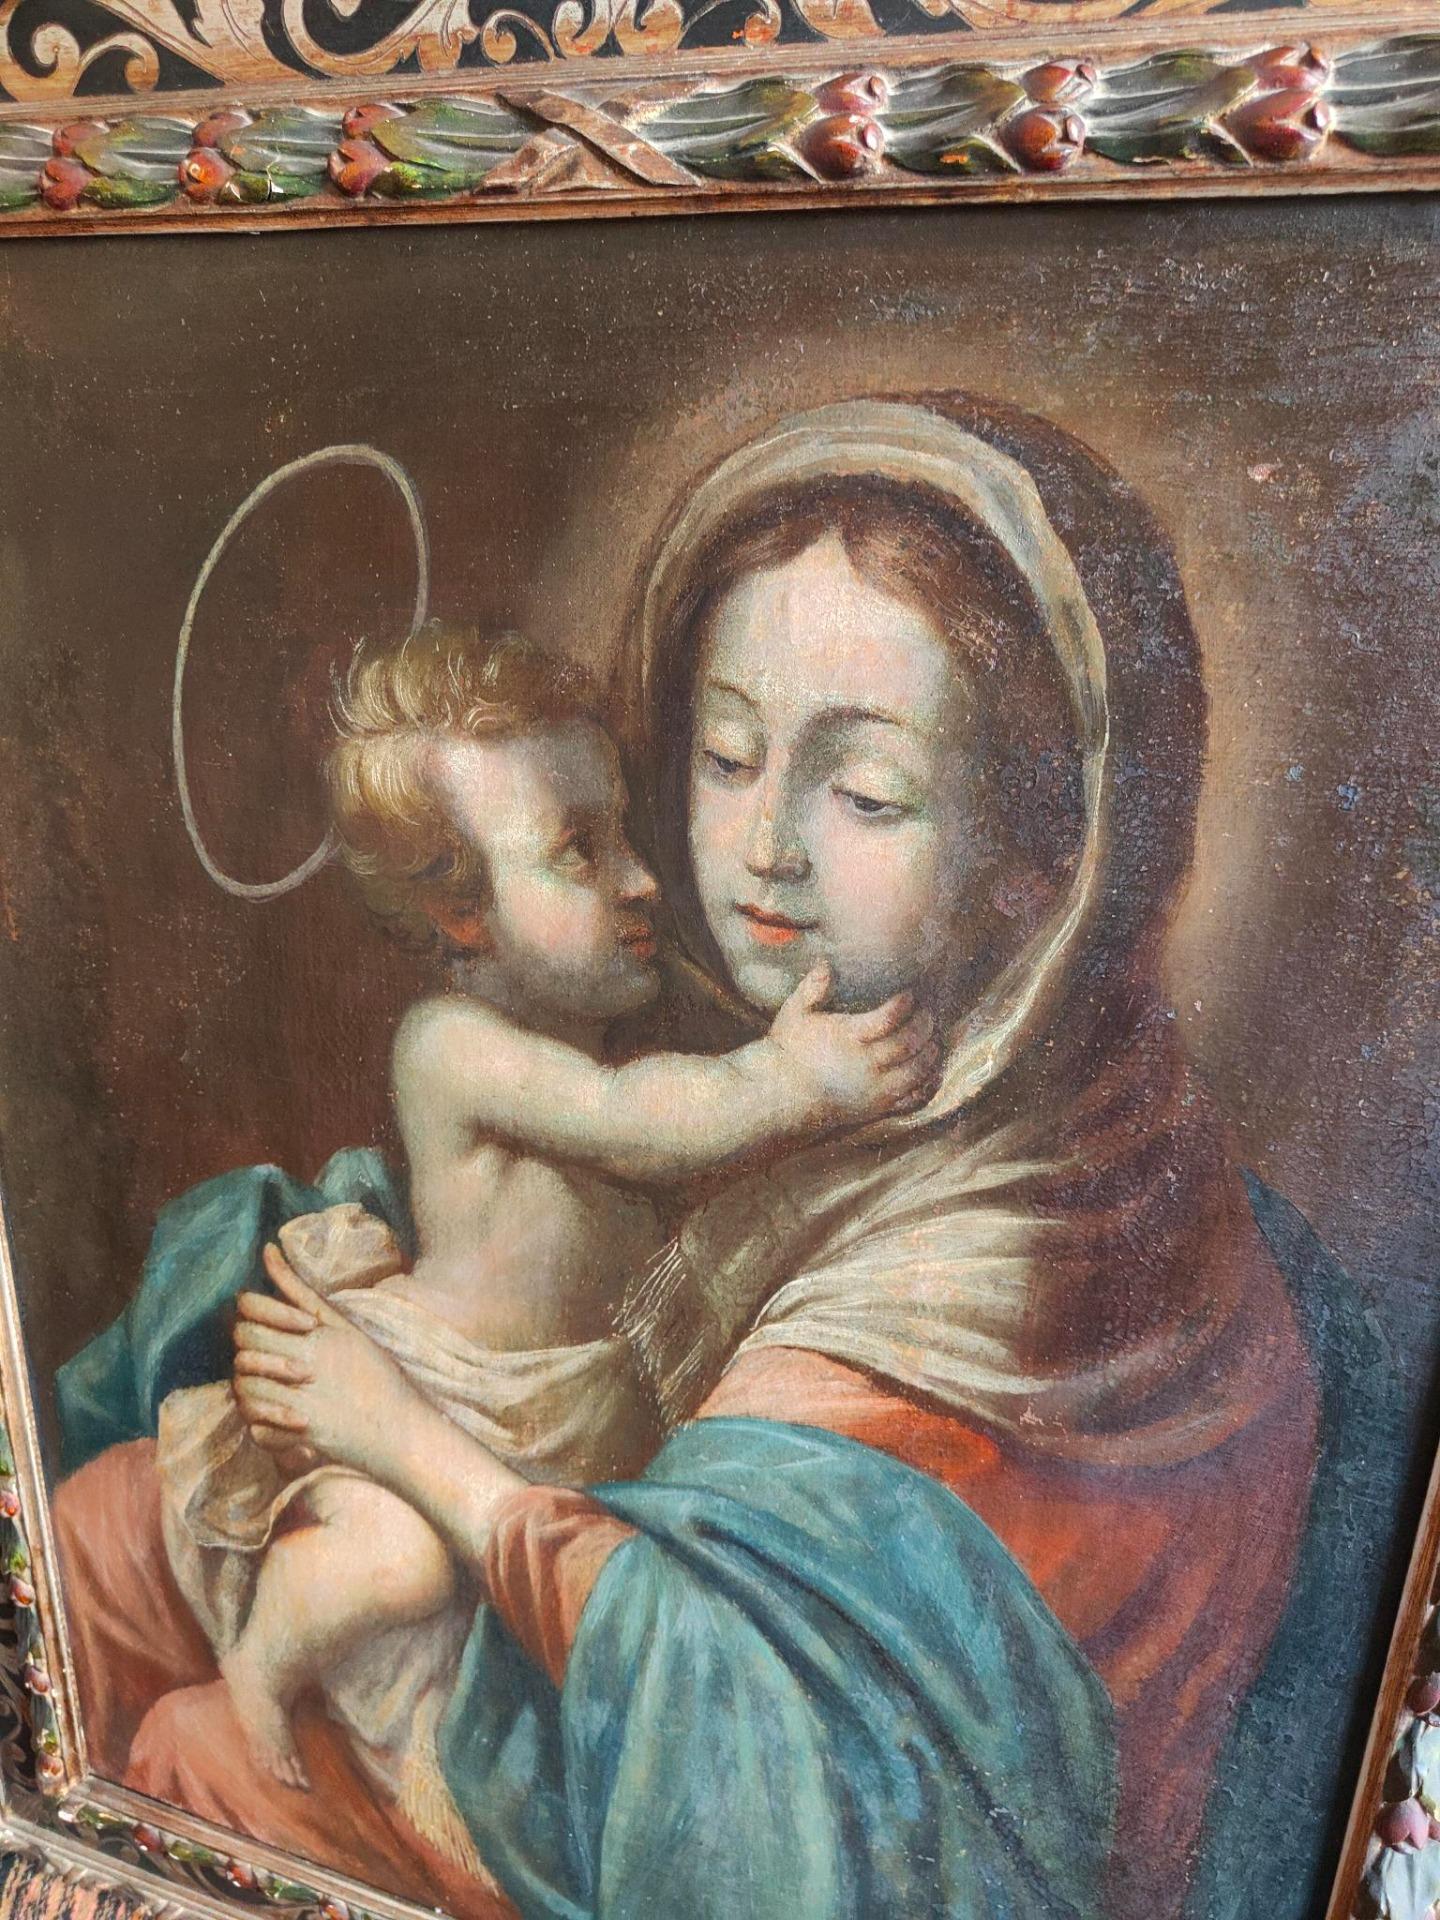 Gemälde, Öl auf Leinwand mit der Darstellung der Madonna mit Kind aus dem 18. Jahrhundert, Gemälde von ausgezeichneter malerischer Qualität. Das Bild hat eine schöne Größe und sehr gute Proportionen. Angenehm helle Arbeit, die sich für jede Art von